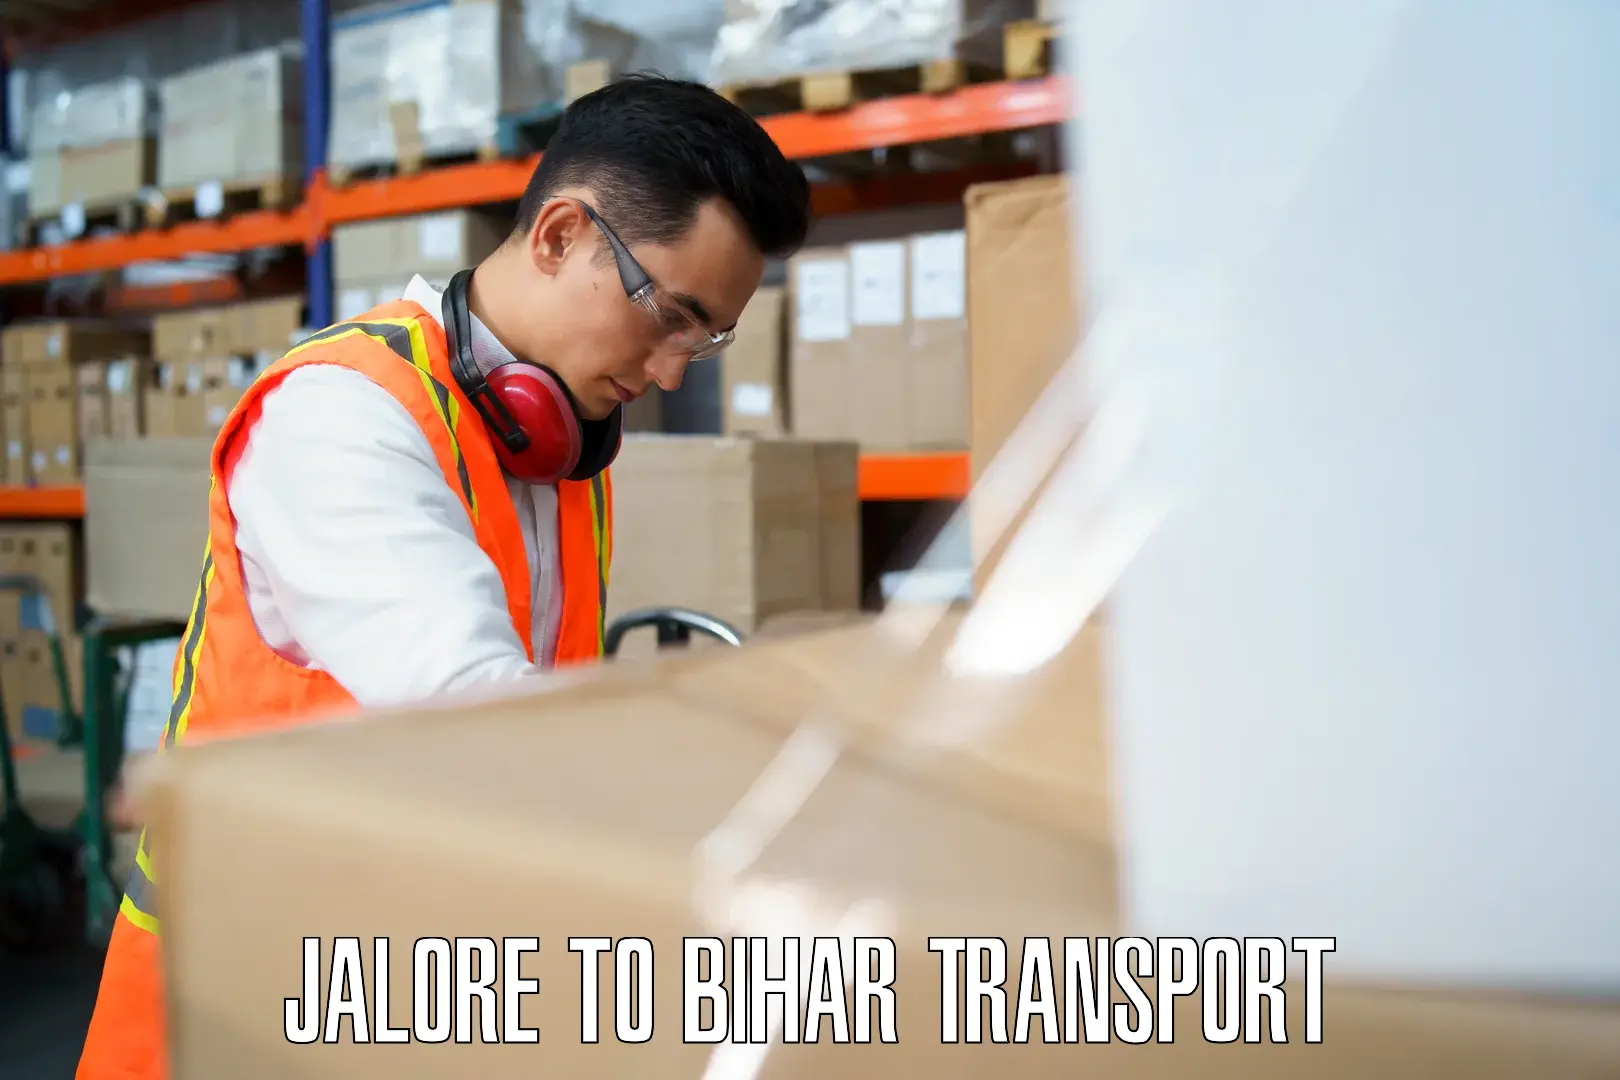 Furniture transport service Jalore to Dighwara